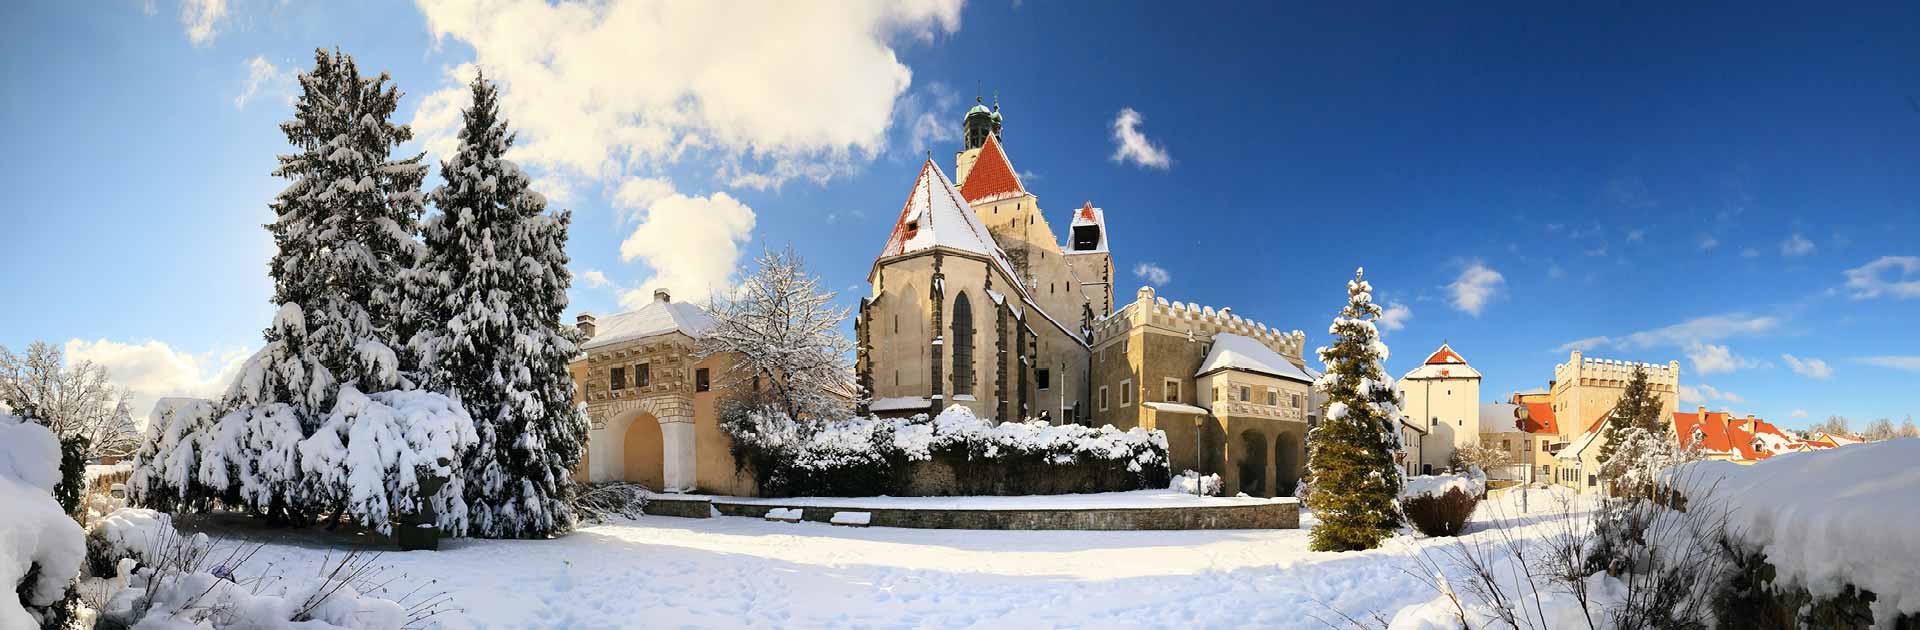 Kostel sv. Jakuba v Prachaticích, zimní pohled, foto: Libor Sváček